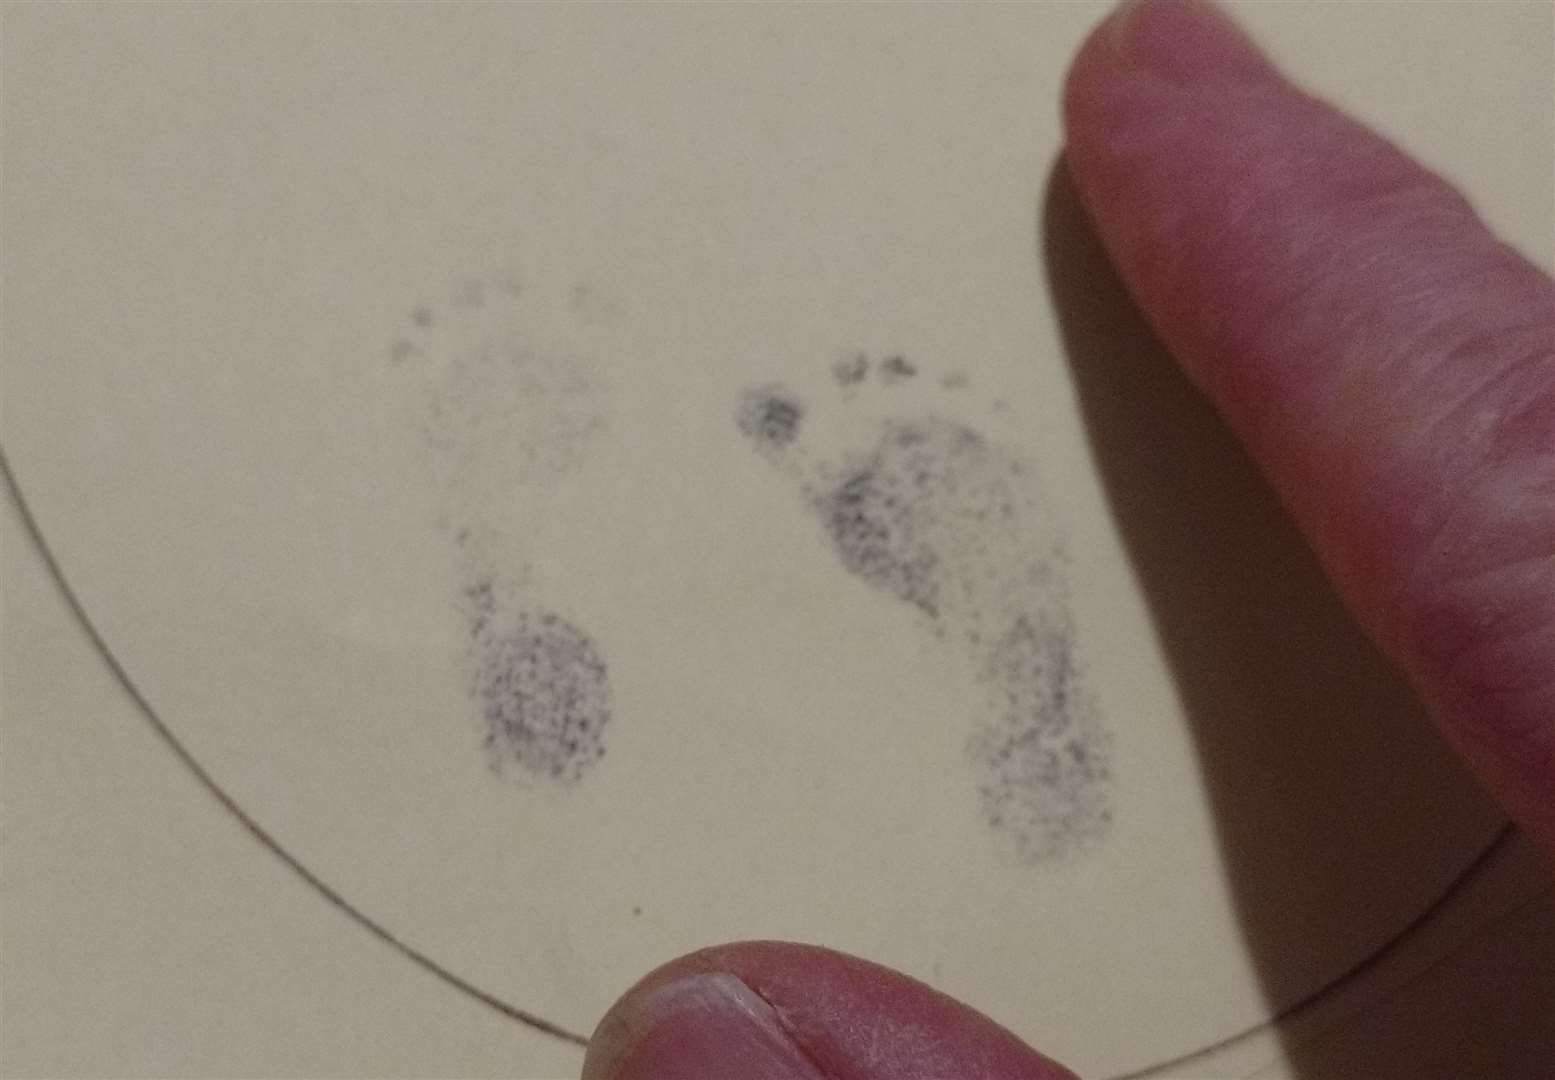 Baby Rhys' footprints